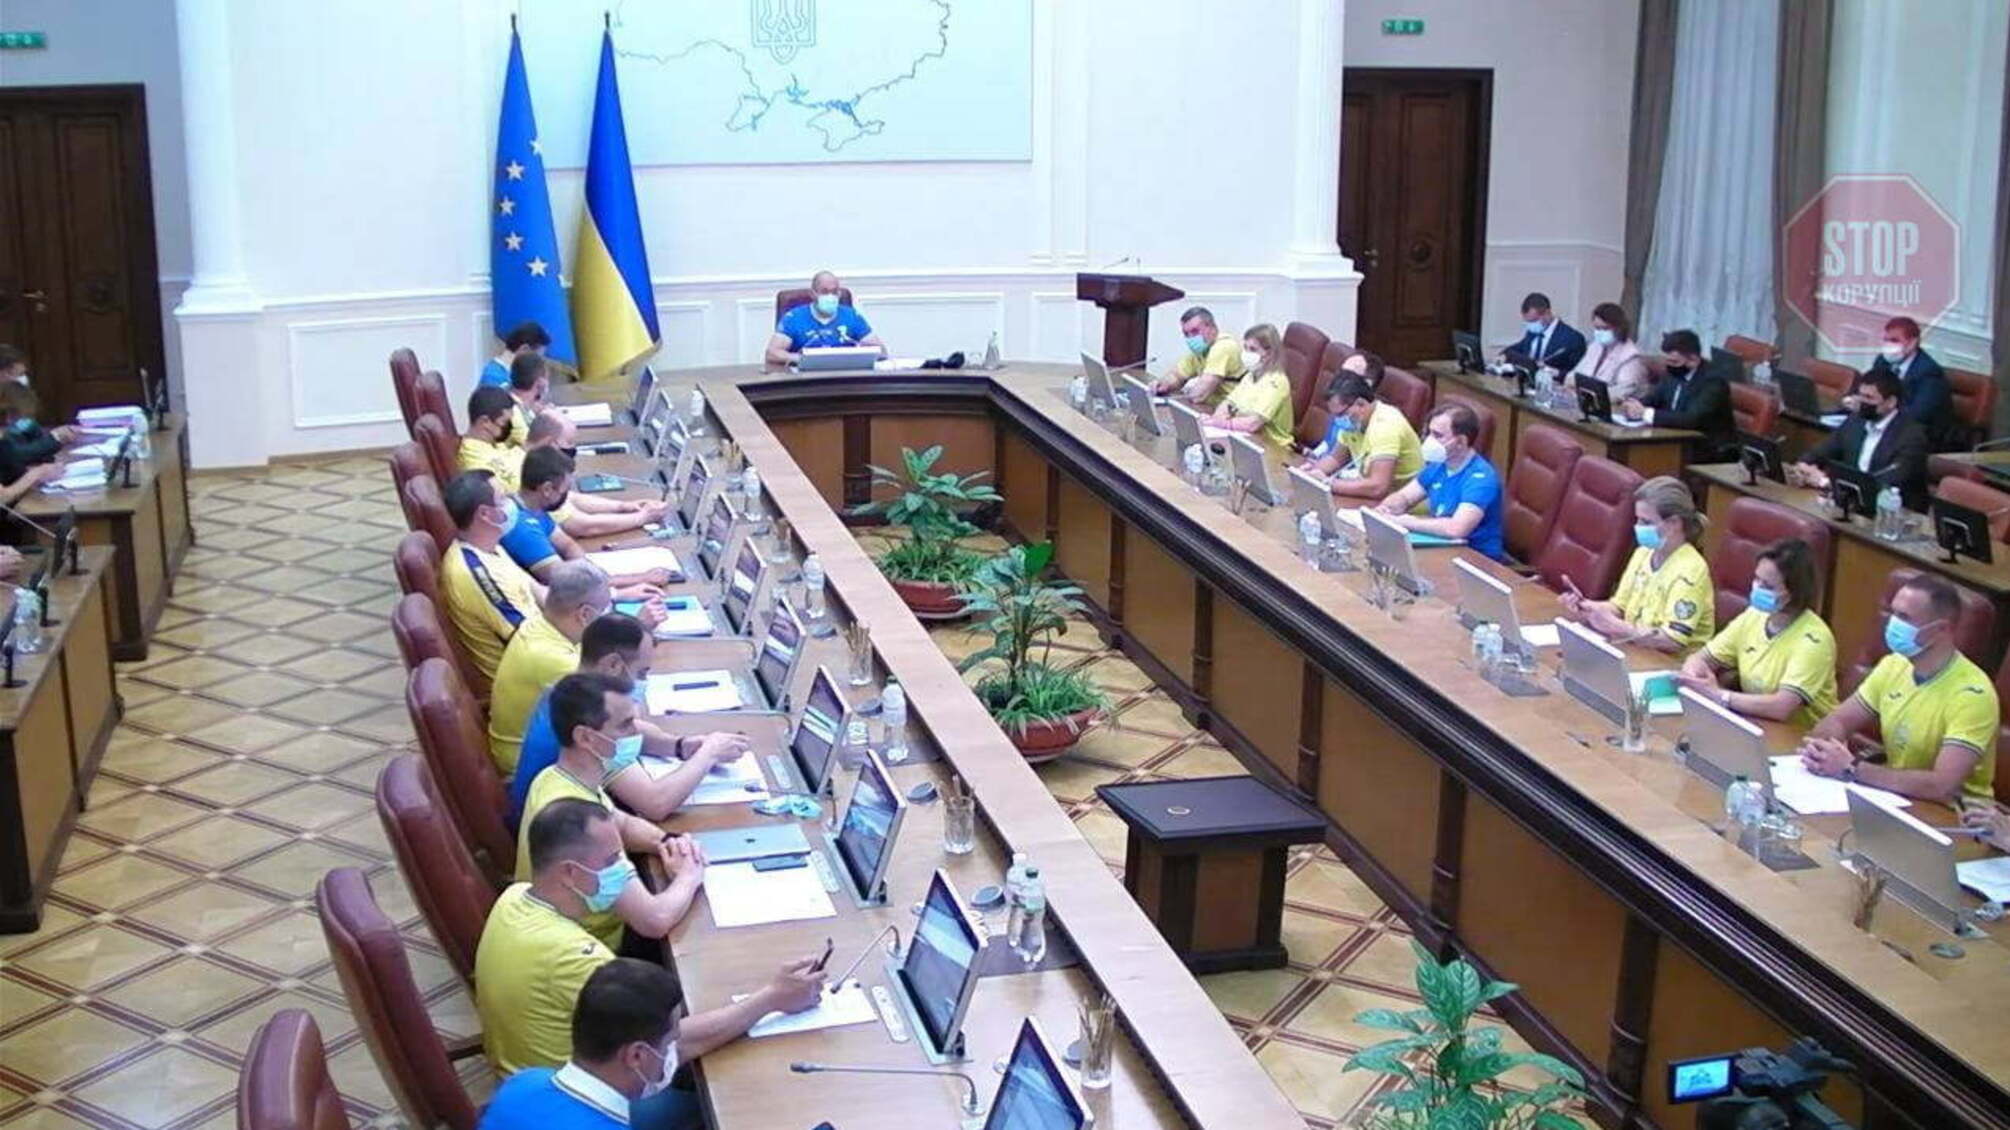 Министры собрались на заседание Кабмина в форме сборной Украины (фото)